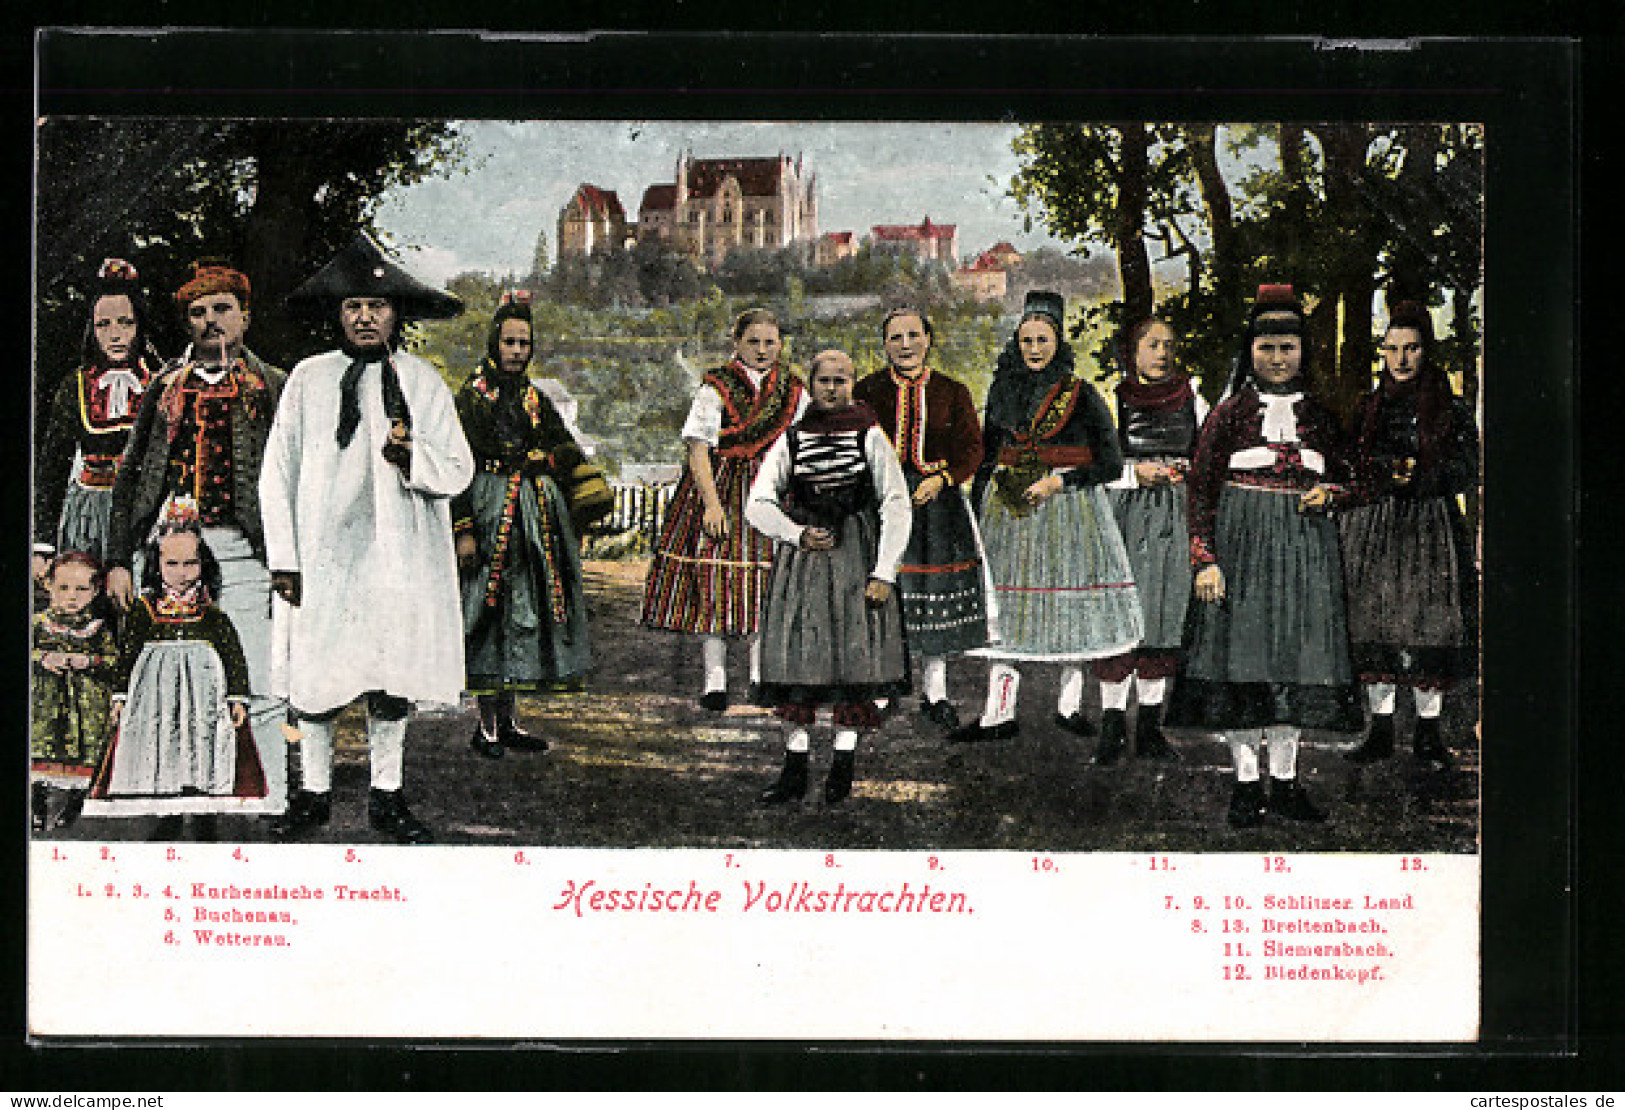 AK Hessische Volkstrachten, Kurhessische Tracht, Buchenau, Wetterau  - Kostums